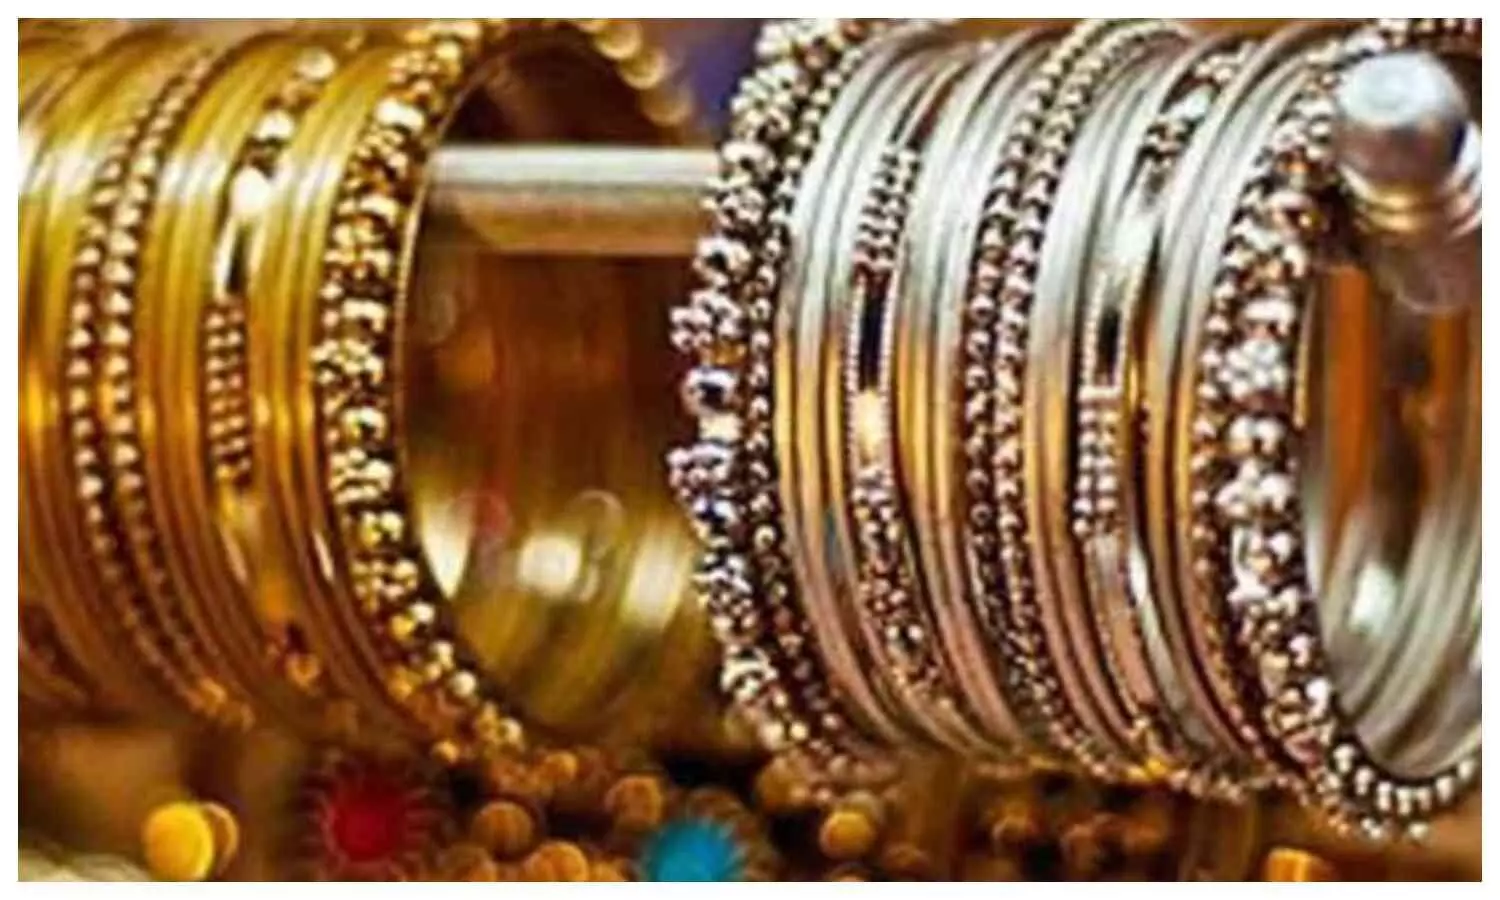 UP Gold Silver Price Today: यूपी में सस्ता हुआ सोना चांदी, खरीदारी से पहले चेक कर लें रेट